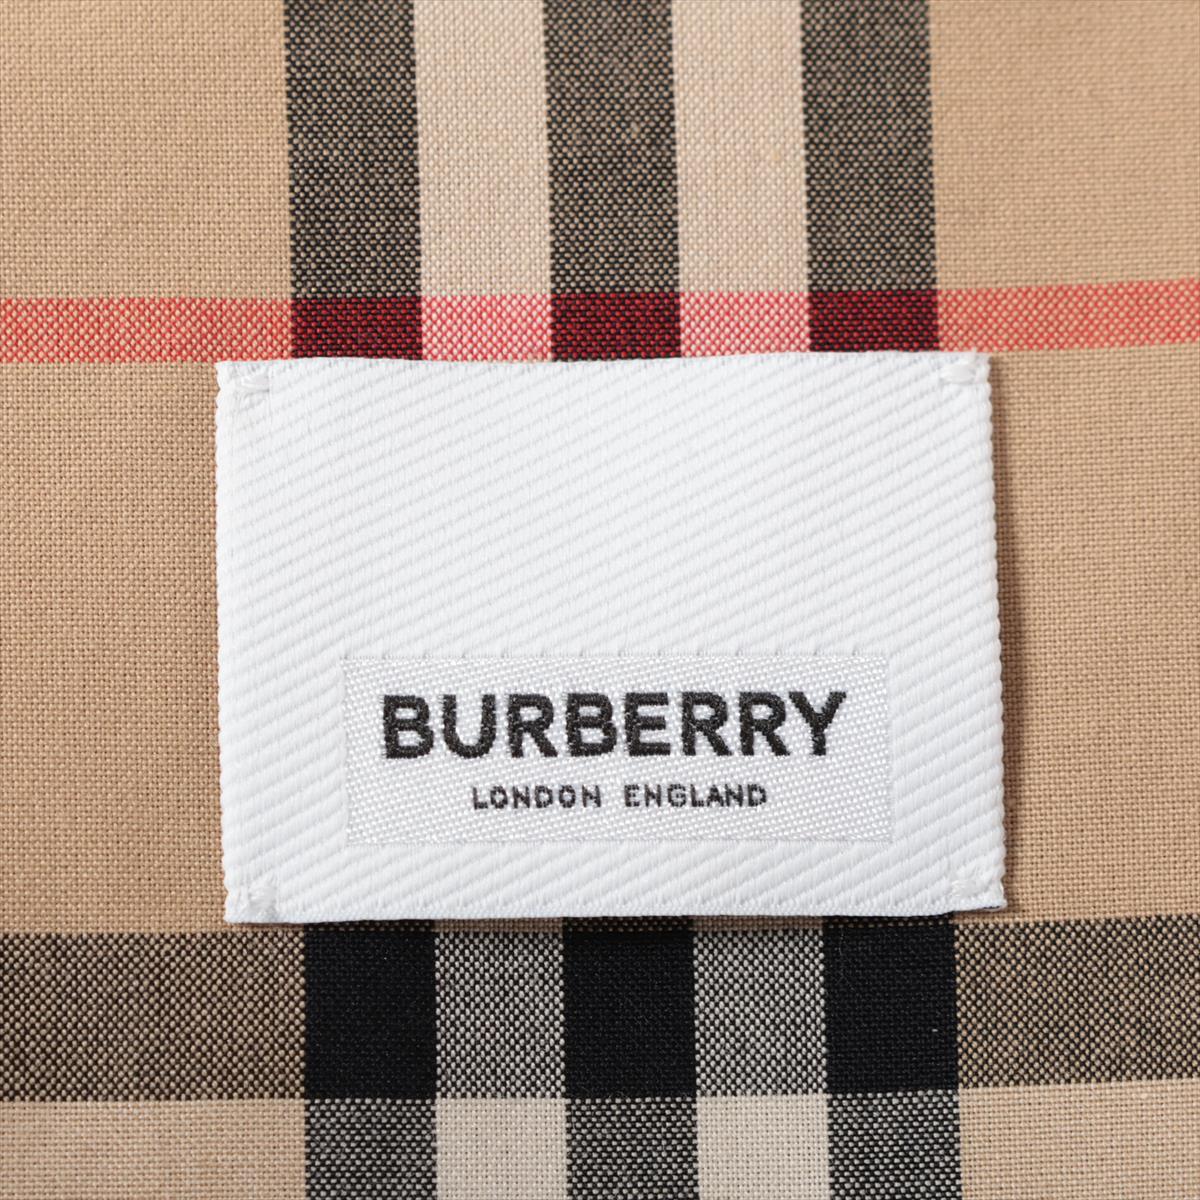 Burberry Tissi period Cotton coats I36 Ladies' Khaki  8033794